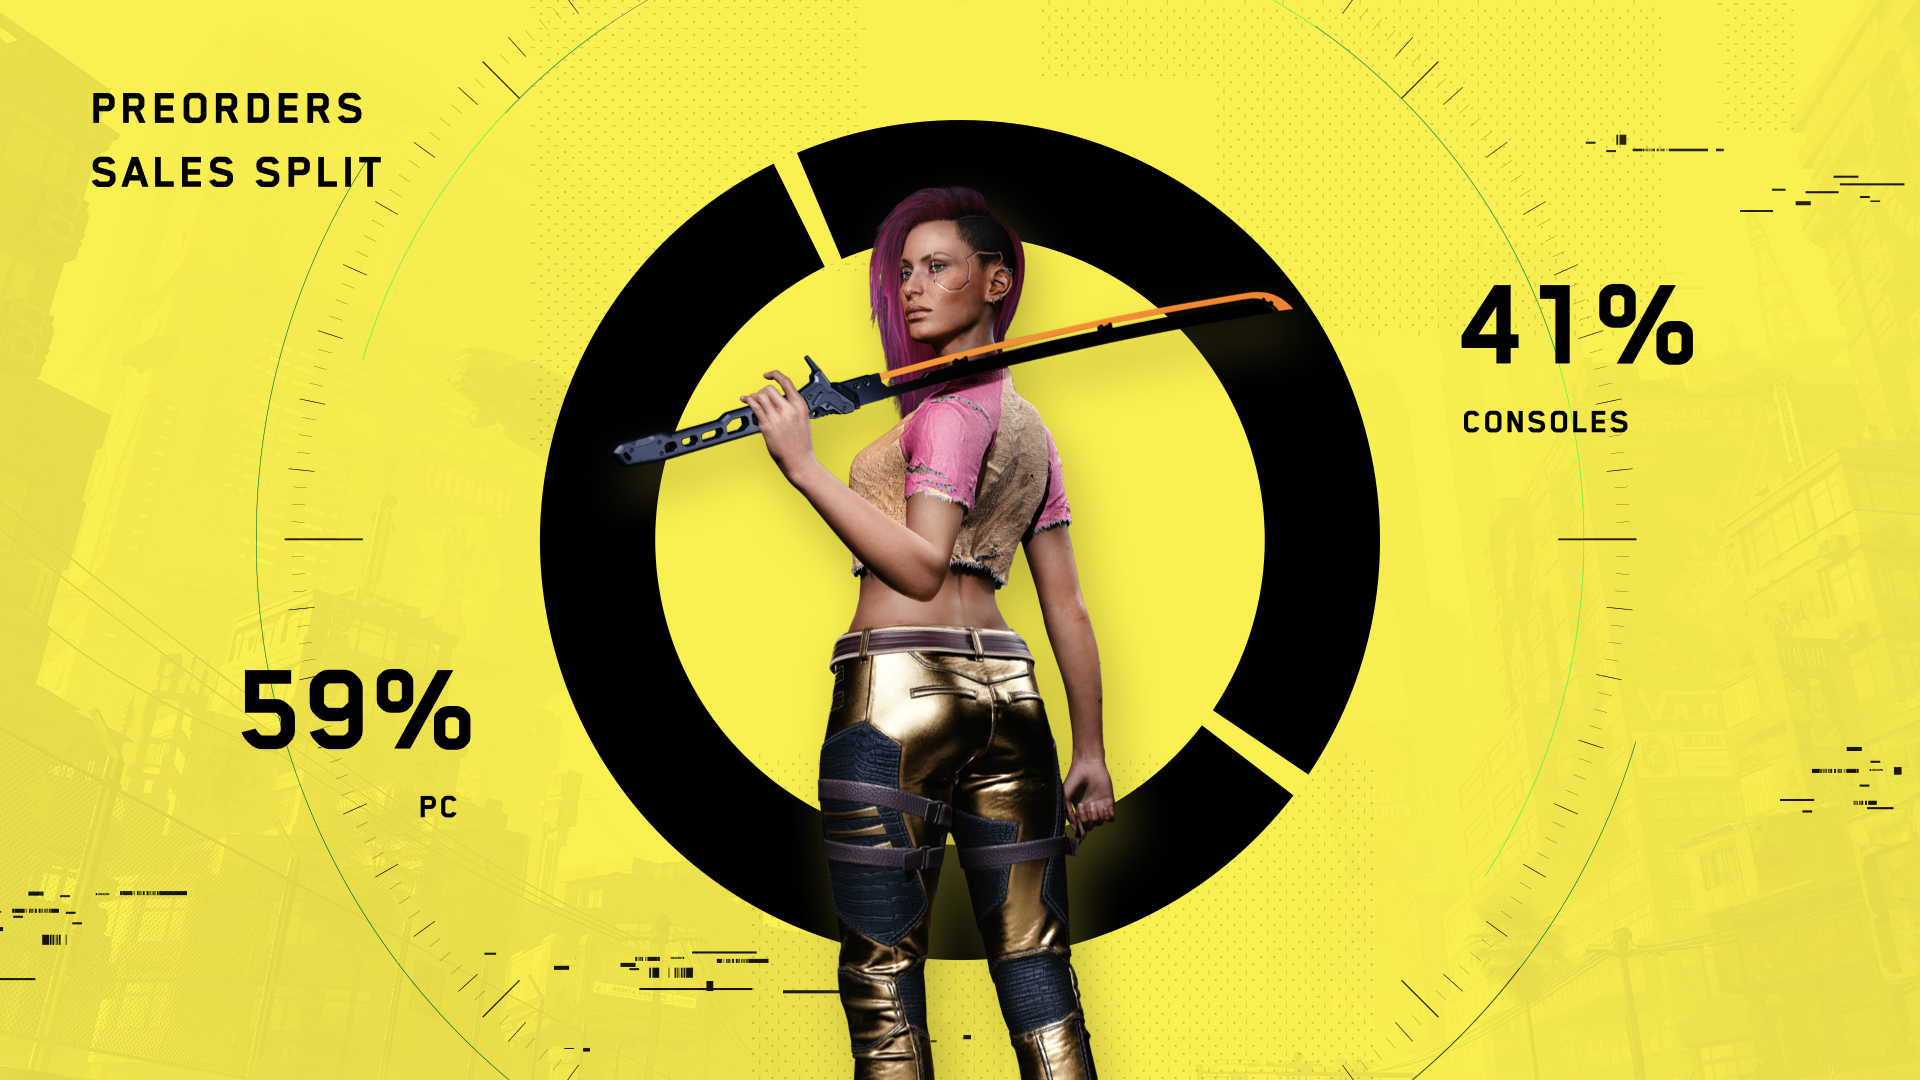 Cyberpunk 2077 vendeu 59% das cópias somente no PC, se tornando o maior launch da história da plataforma